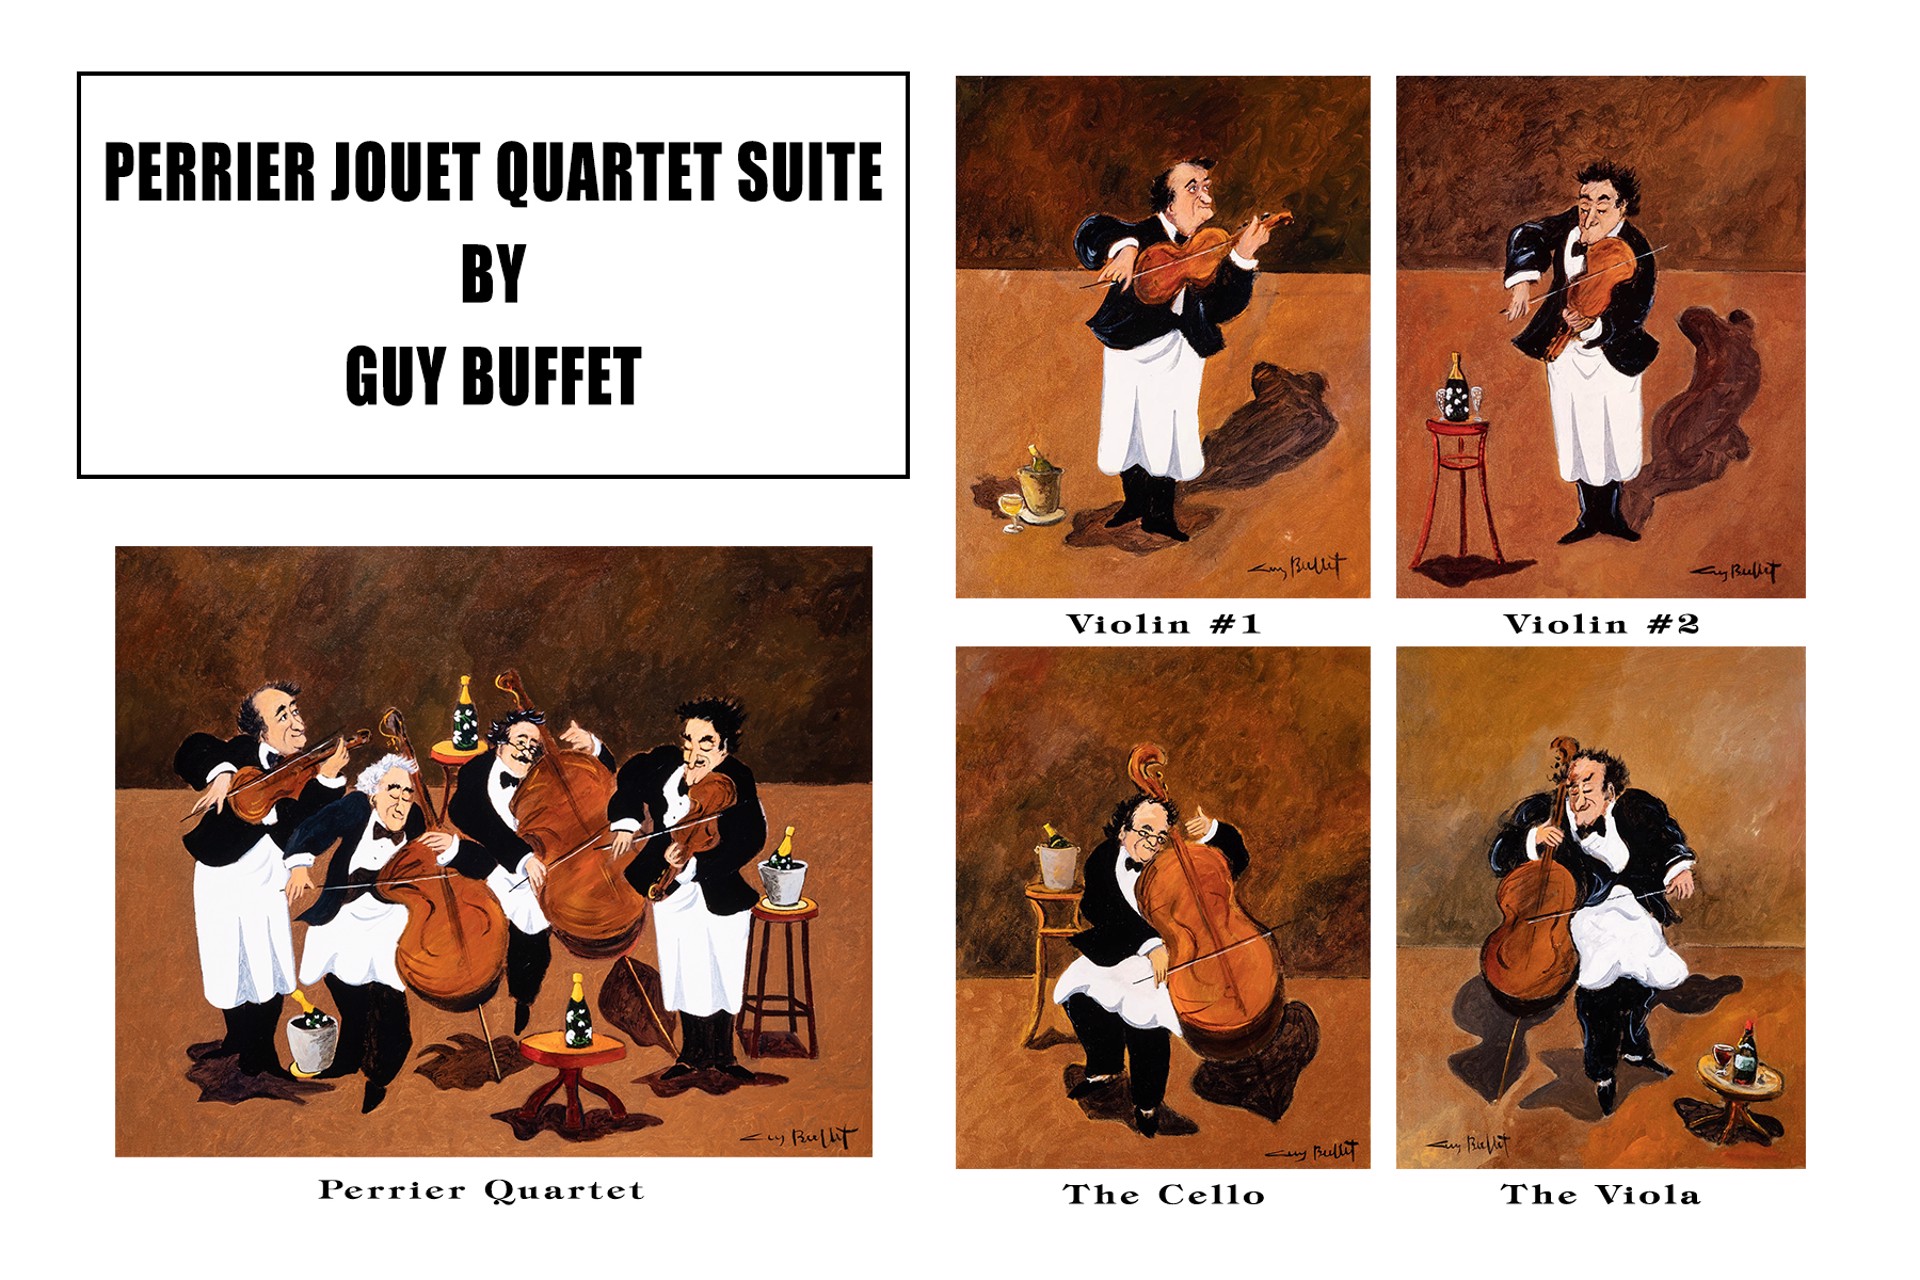 Perrier Jouet Quartet Suite - Violin #2 by Guy Buffet